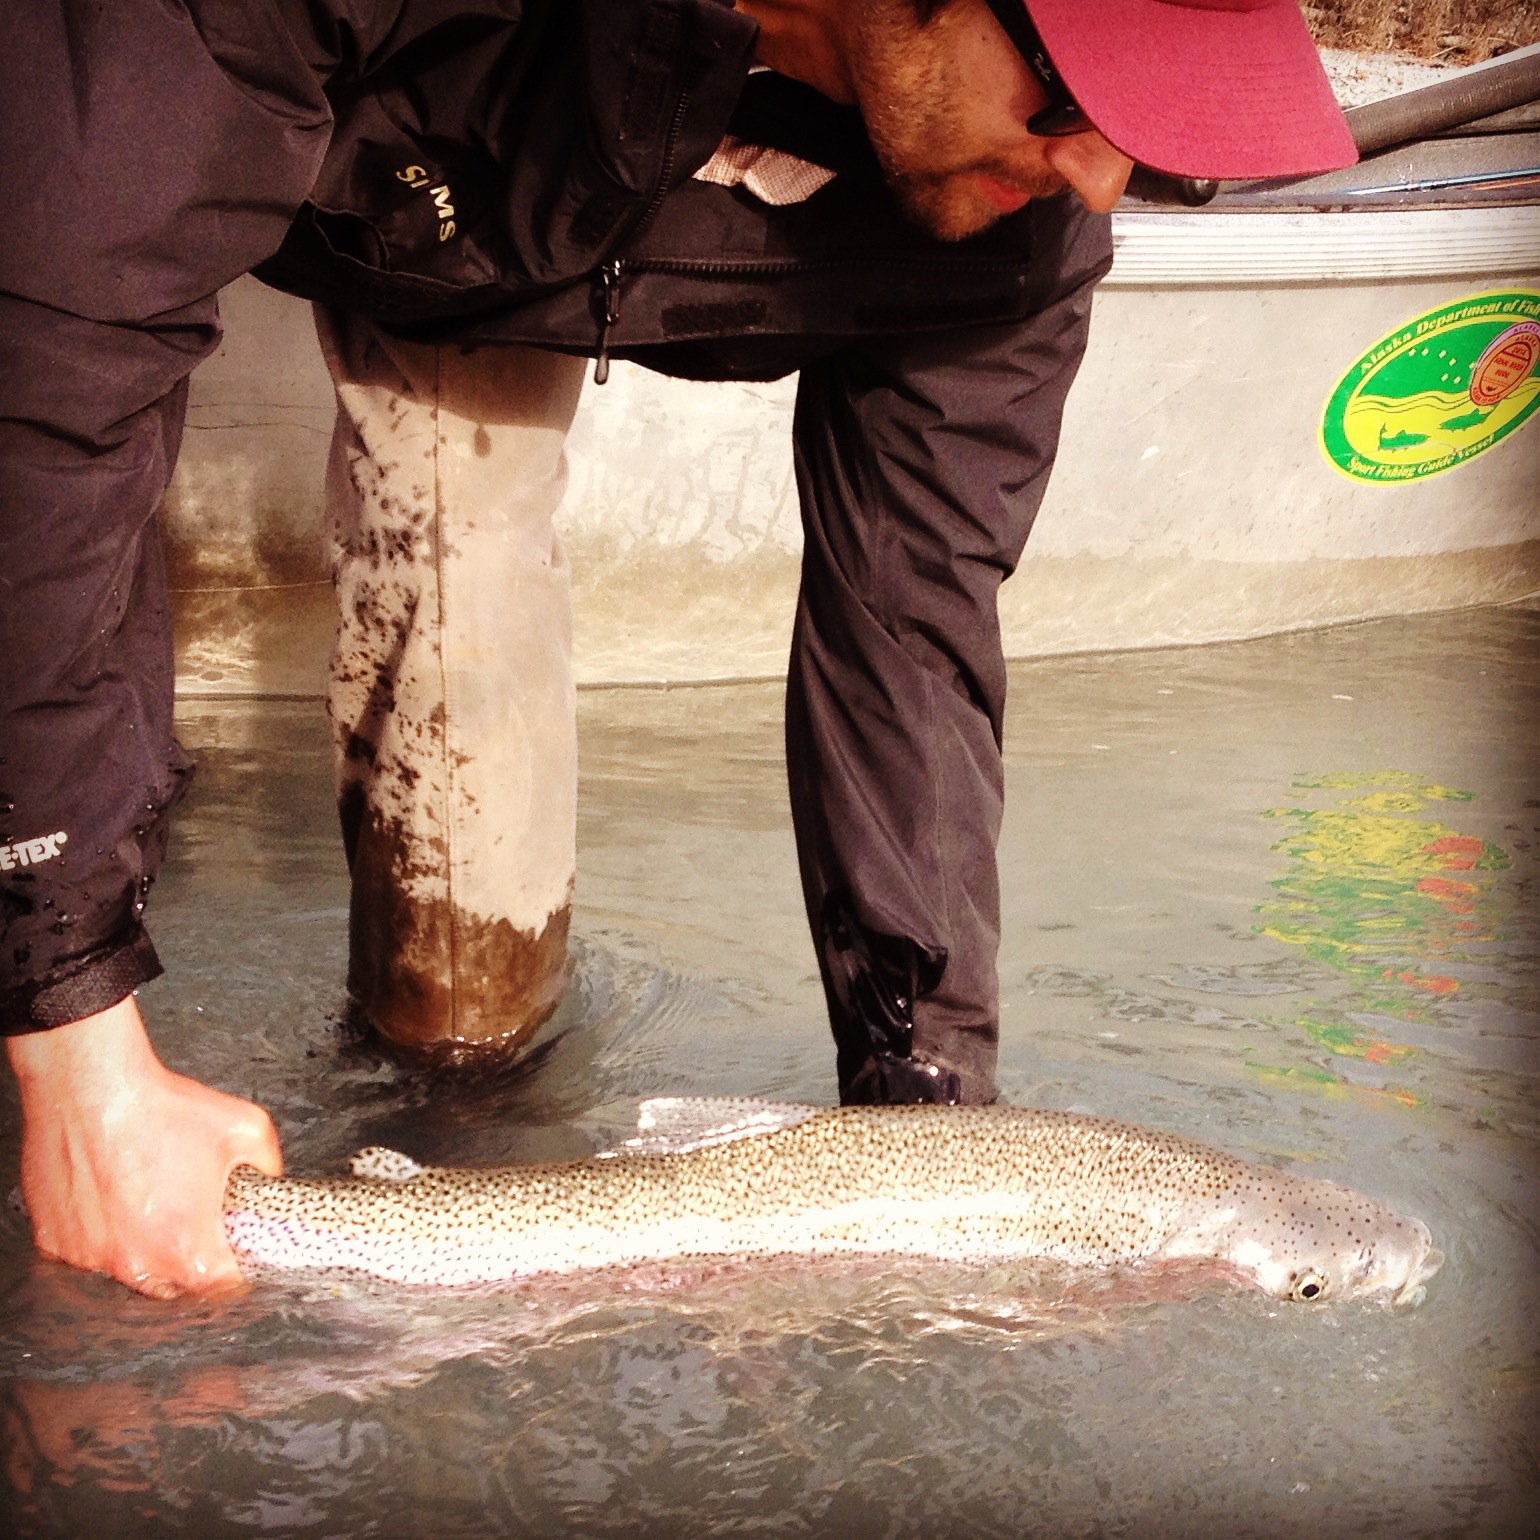 Alaska Salmon Photos and Kenai Rainbow Pictures - Kenai Wild Fishing